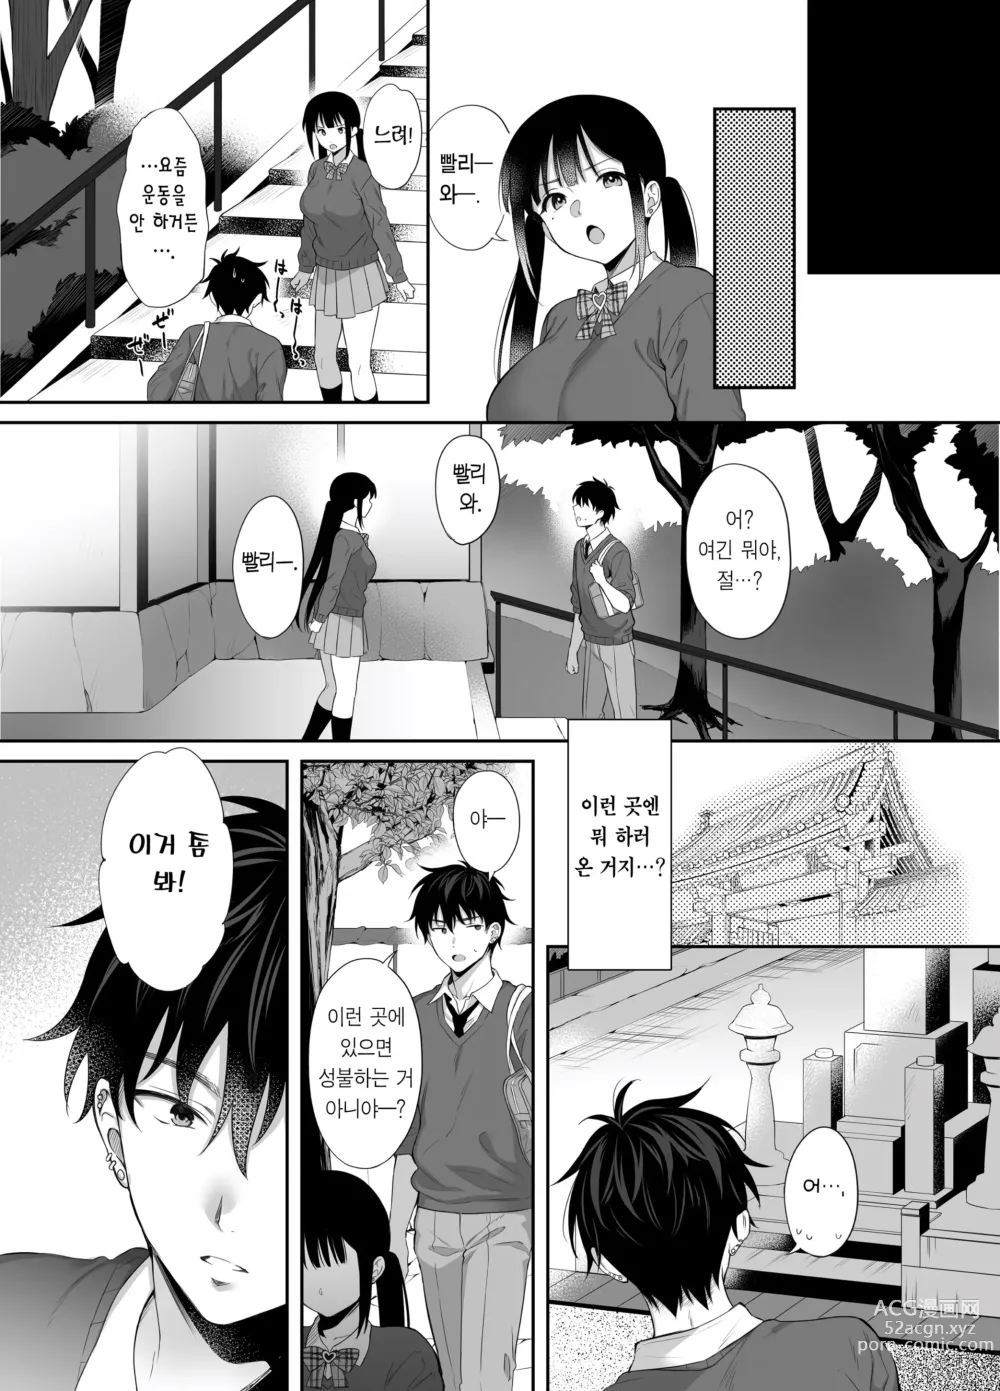 Page 47 of doujinshi 폐허에서 지뢰녀랑 밤새 질내사정 섹스한 이야기 2 (decensored)